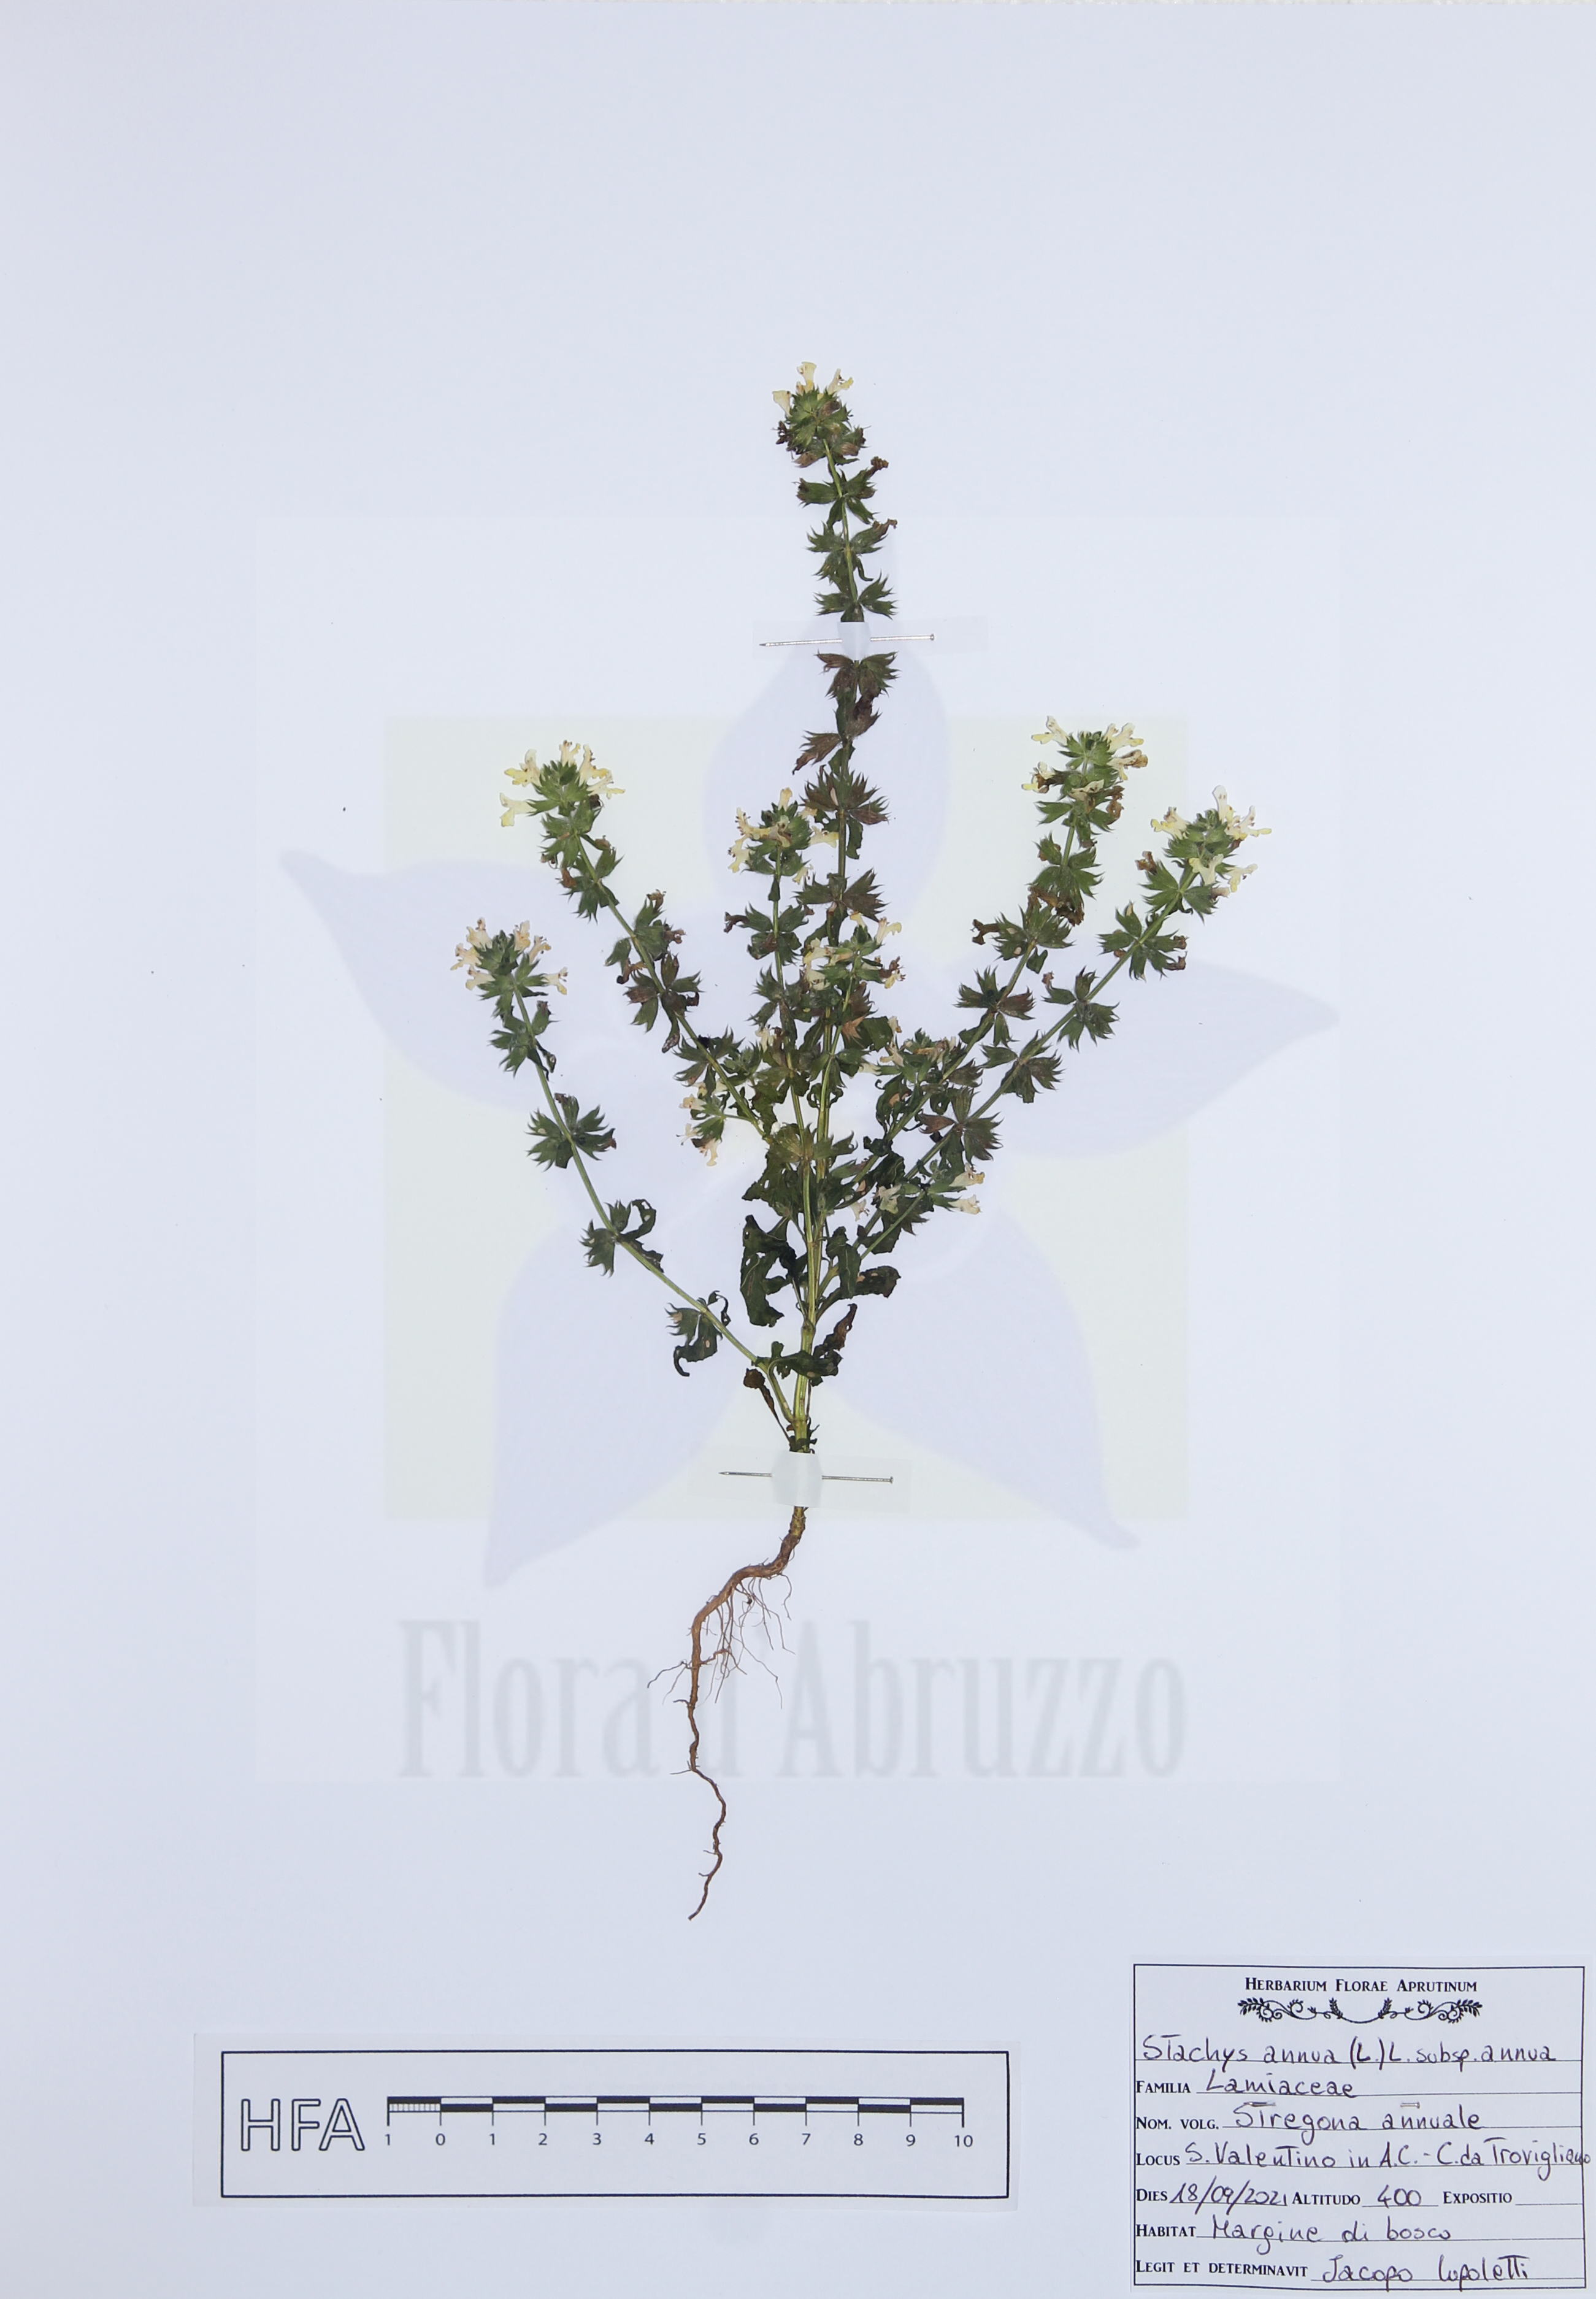 Stachys annua (L.) L. subsp. annua